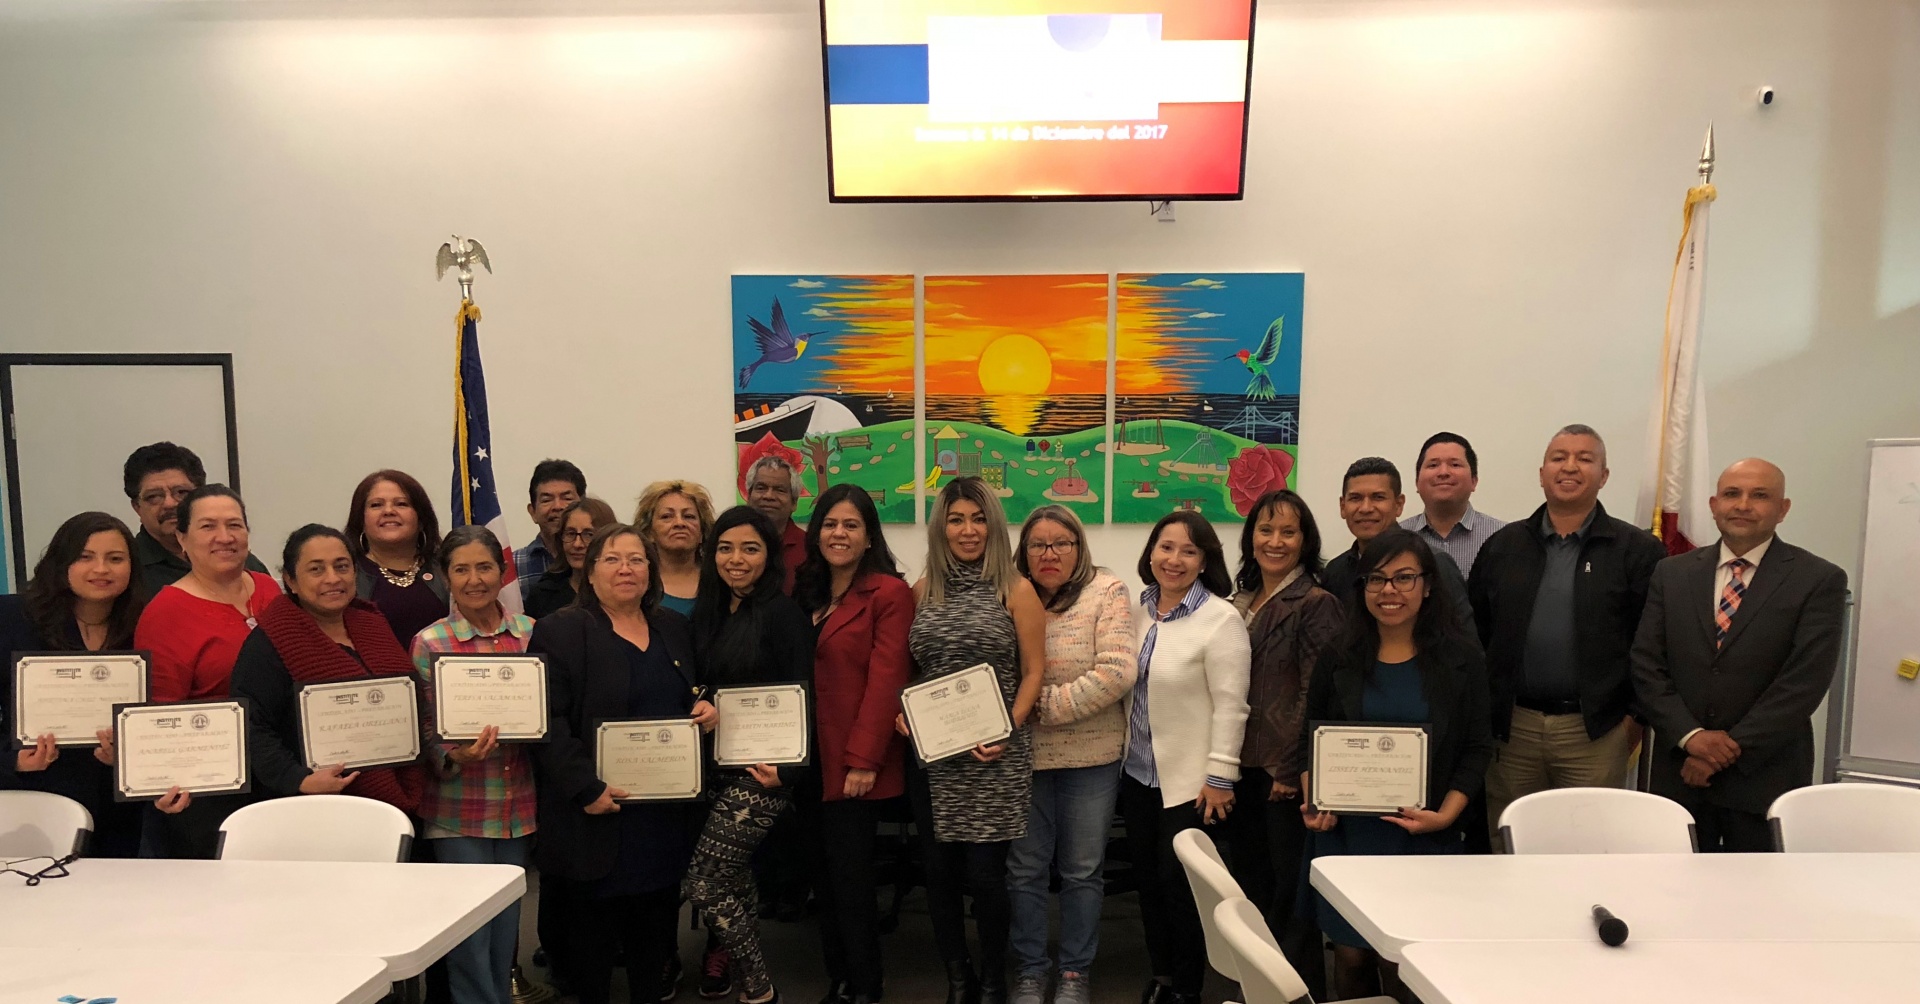 Centro CHA Certificate Recipients on 12/14/17